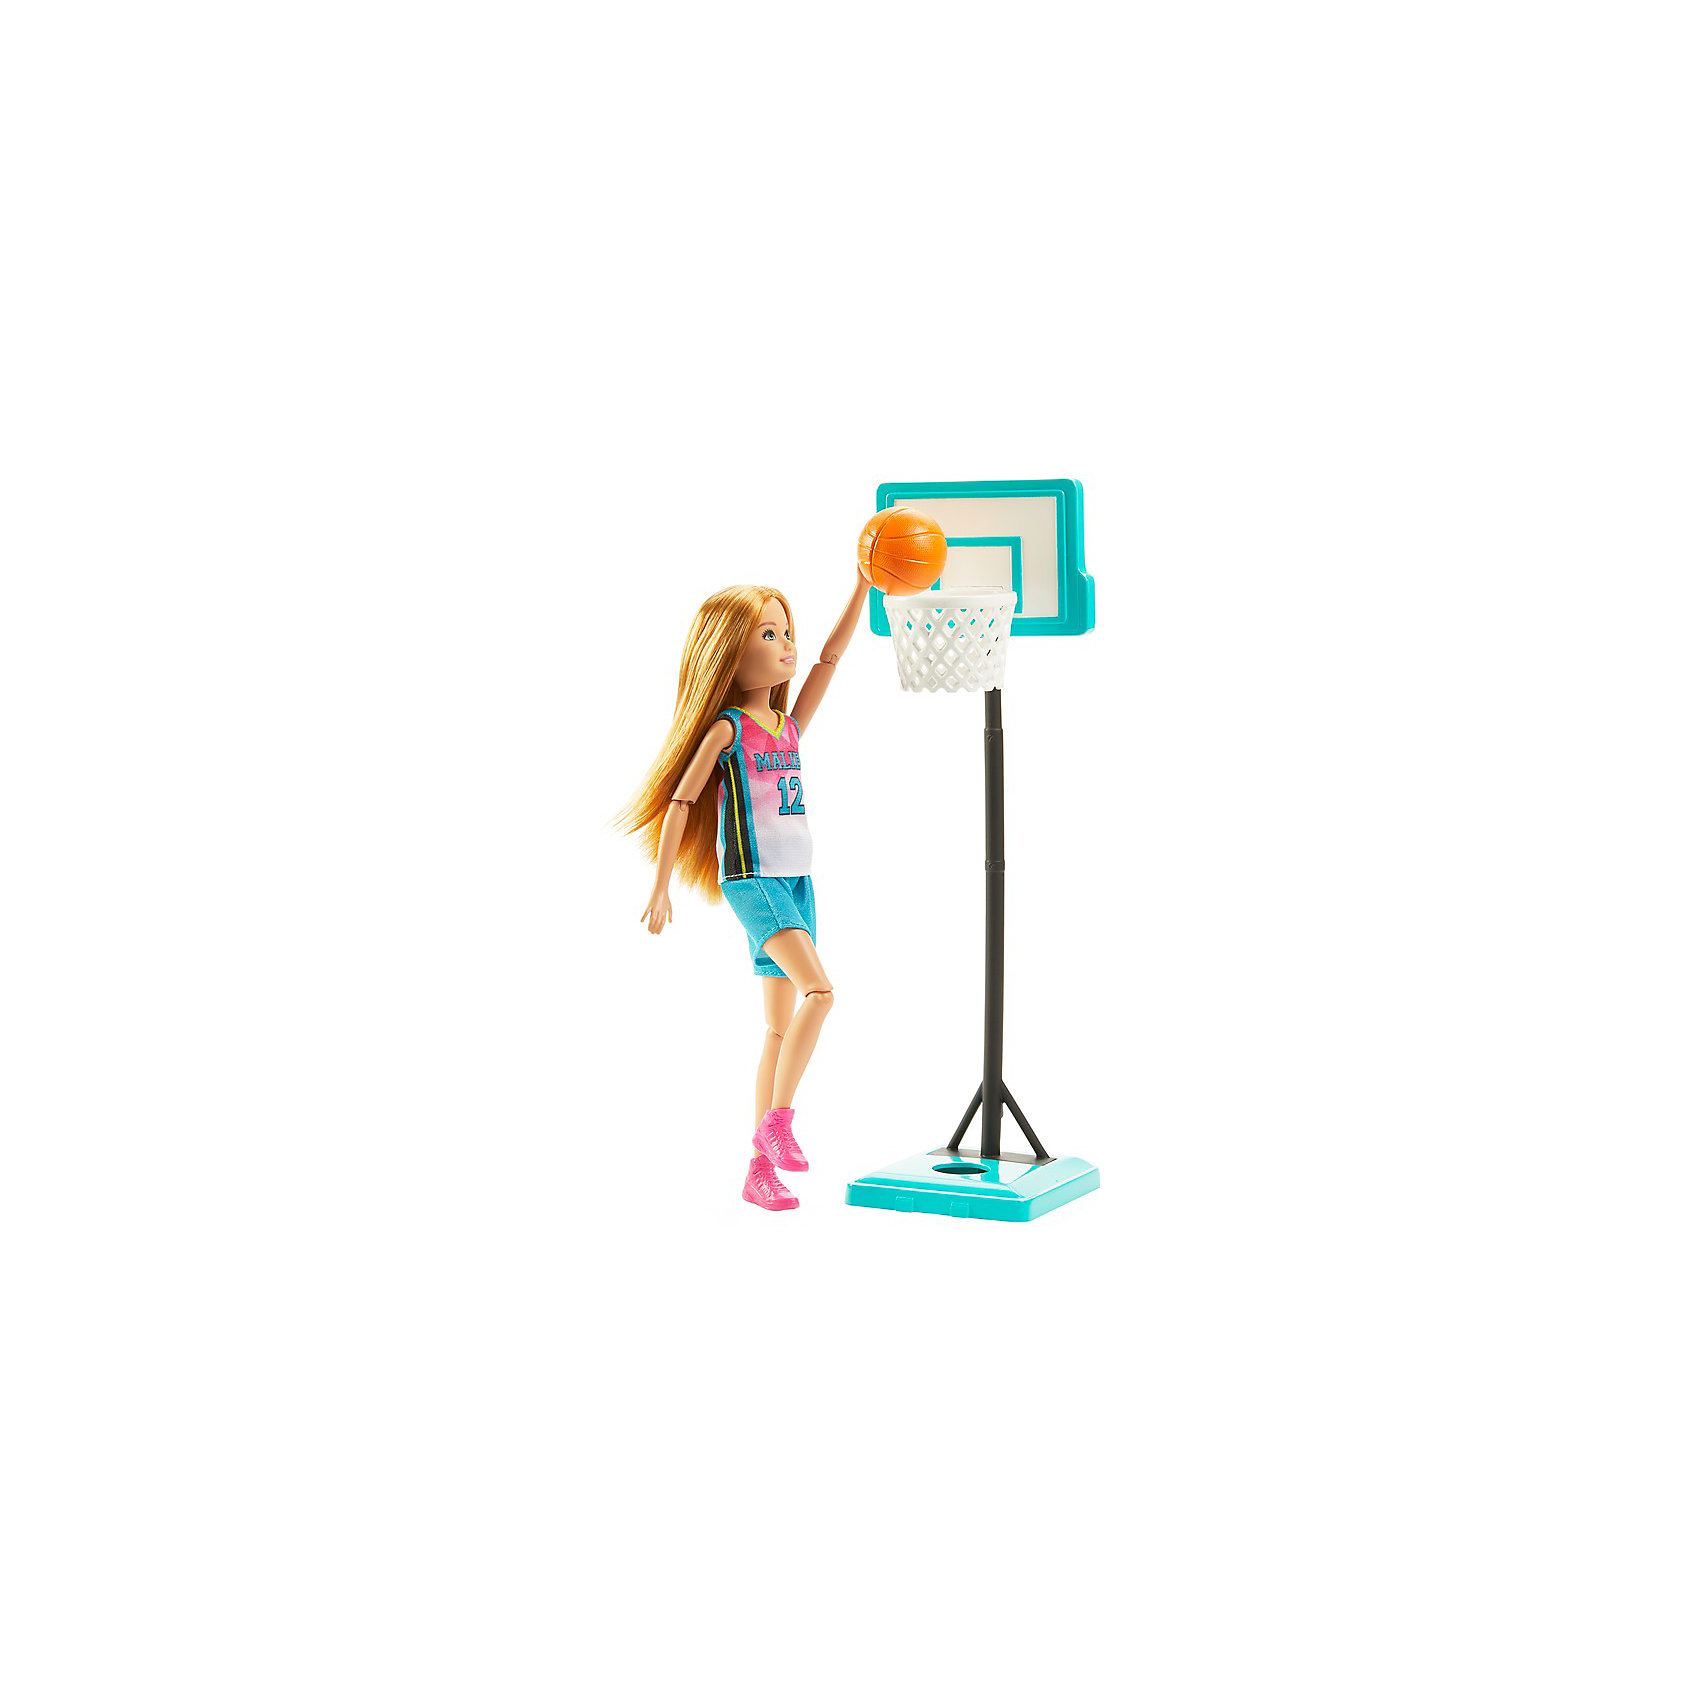 Игровой набор Barbie "Спортивные сестрёнки" Баскетболистка Mattel 14642127